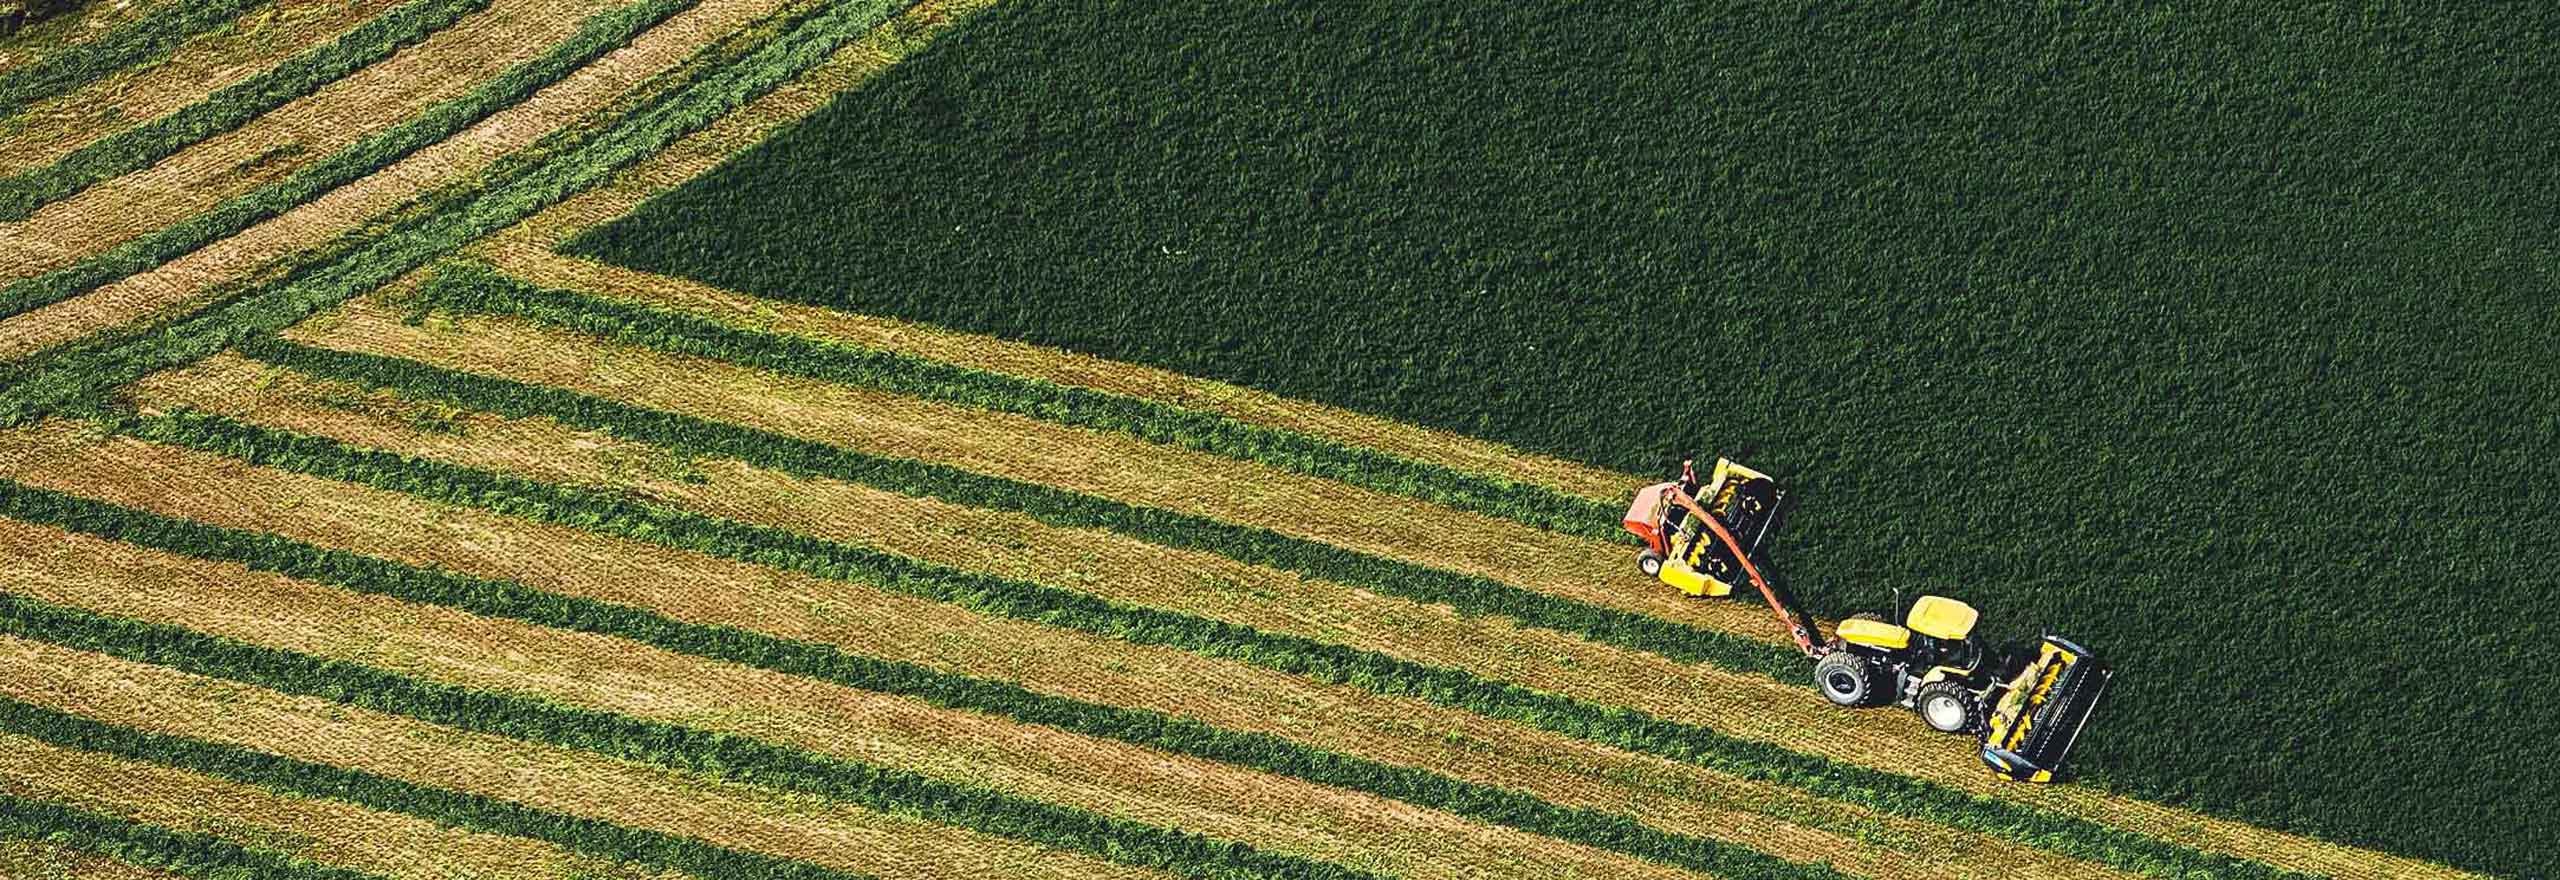 Vue aérienne d’un tracteur avec un outil récoltant du foin " (Texte alternatif par défaut : "Vue aérienne d’un tracteur équipé d’un outil pour récolter le foin 